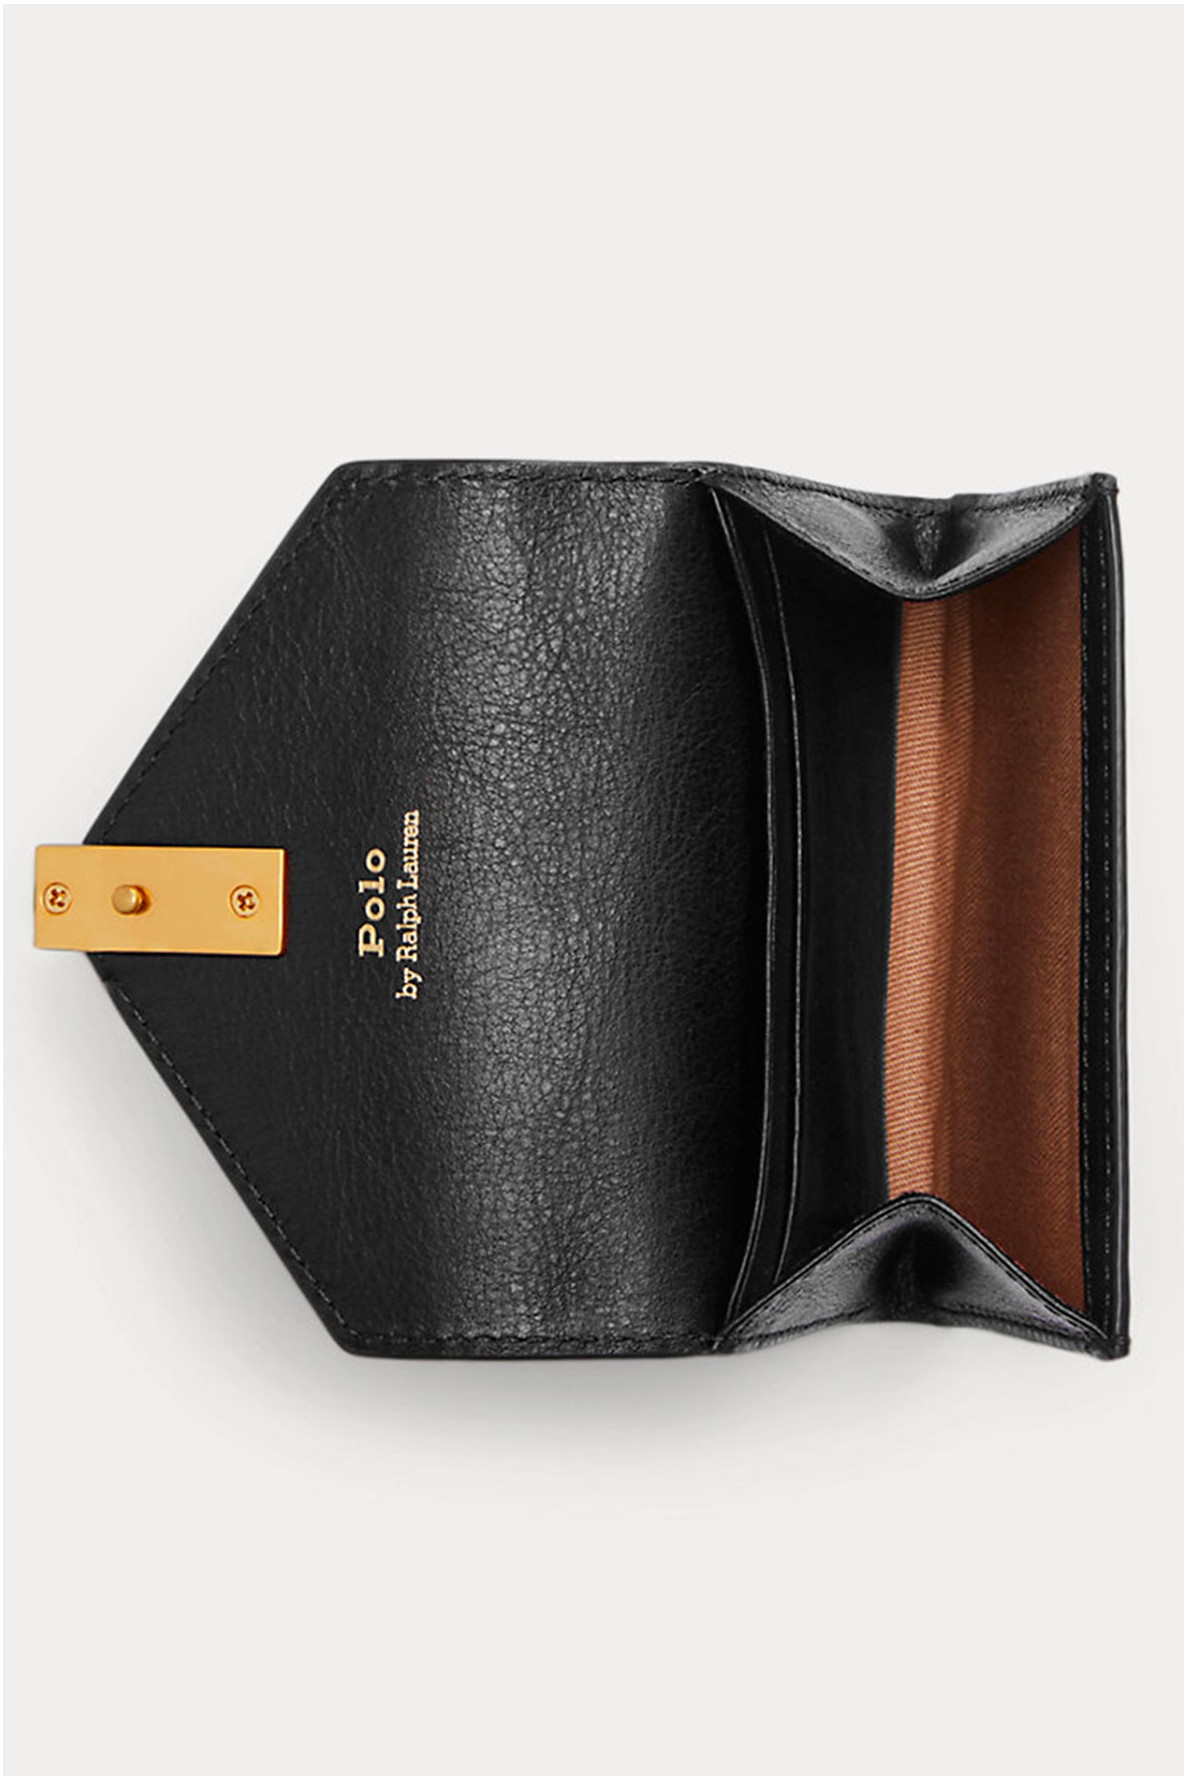 Polo zwarte portemonnee - Polo - Ralph Lauren - 3 